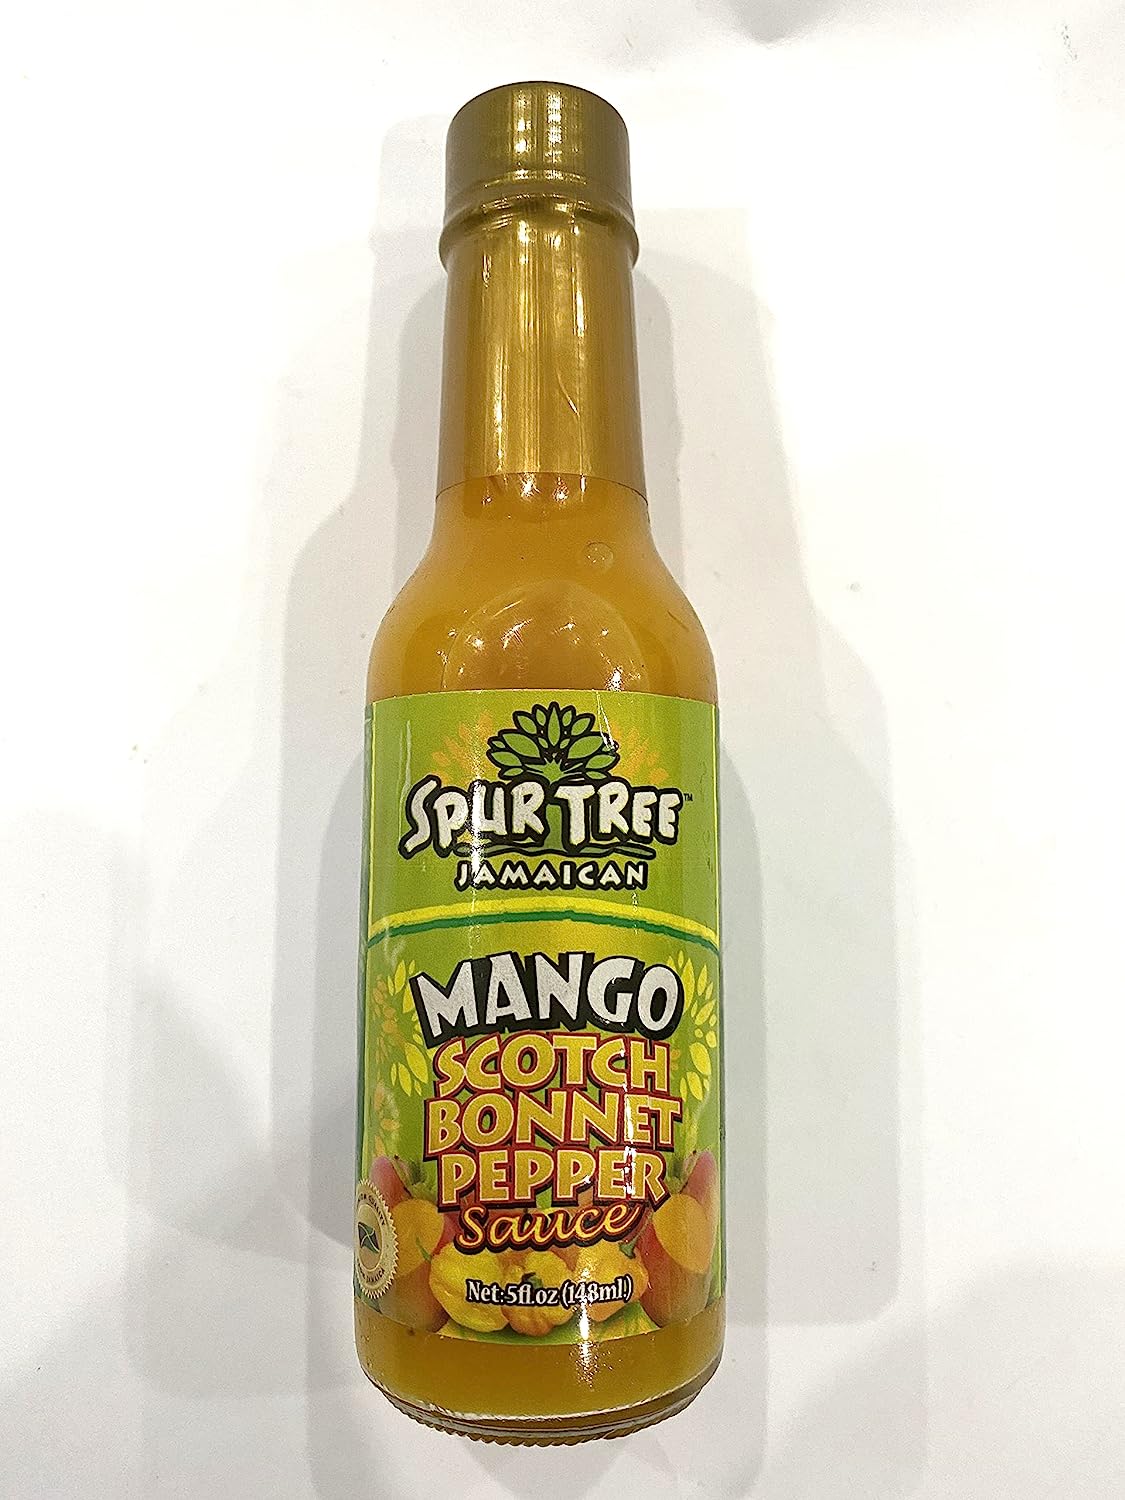 Spurtree Jamaican Mango Scotch Bonnet Pepper Sauce (Mango)